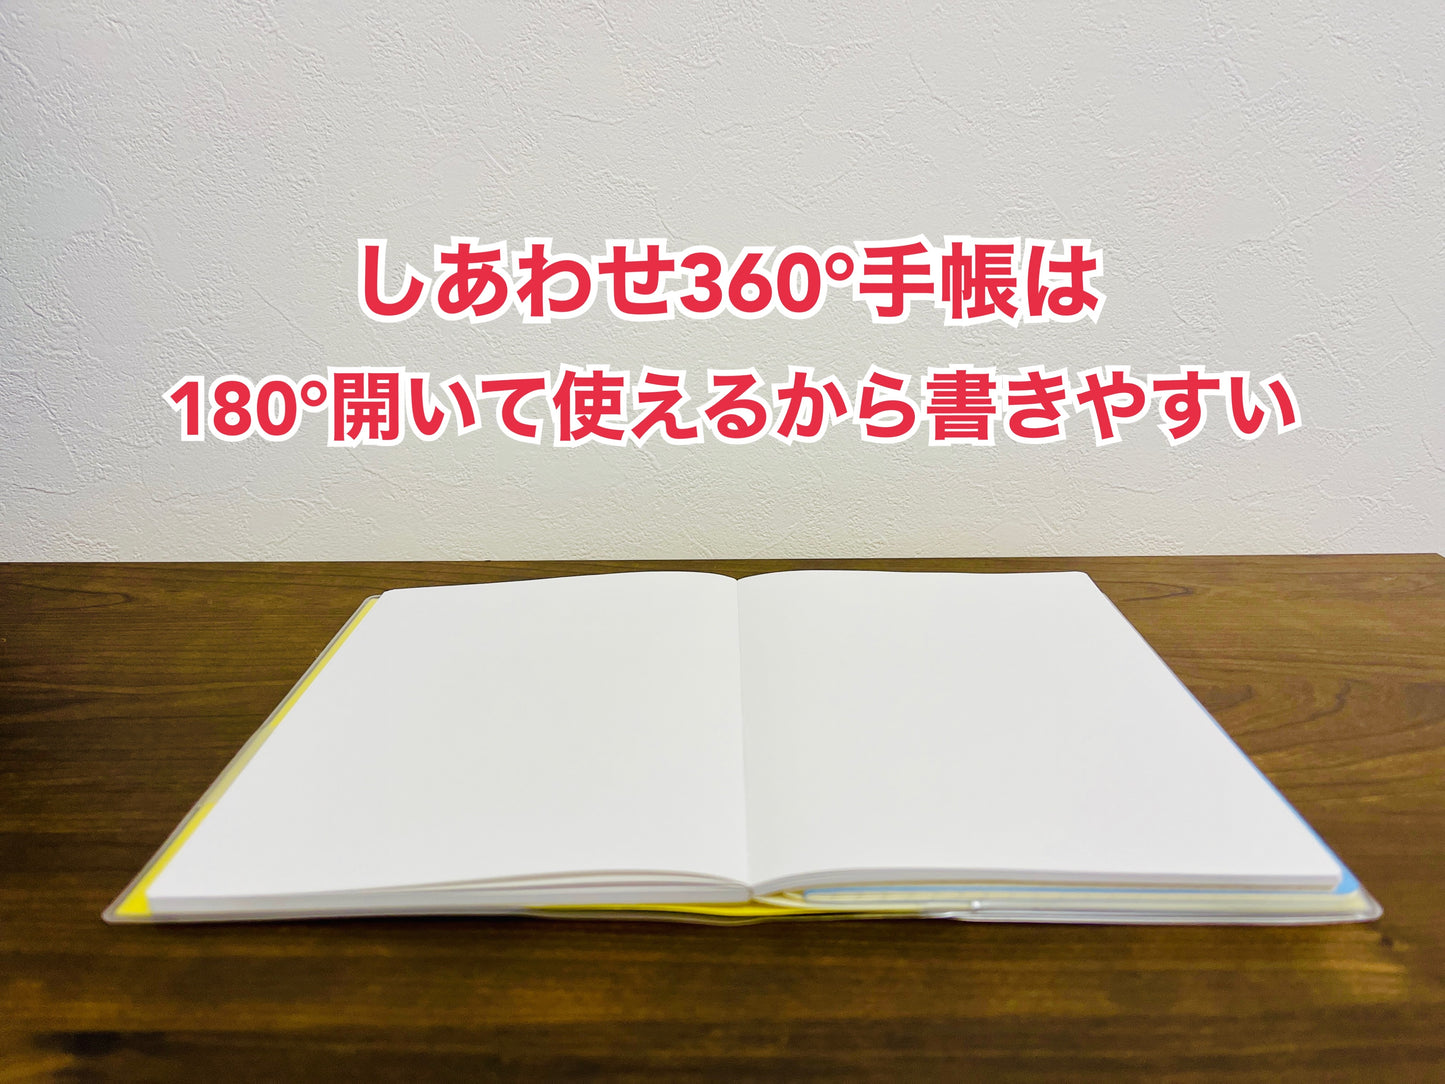 Sổ tay Hạnh phúc 360 độ năm 2024＜lịch tháng-monthly＞ Màu Đỏ